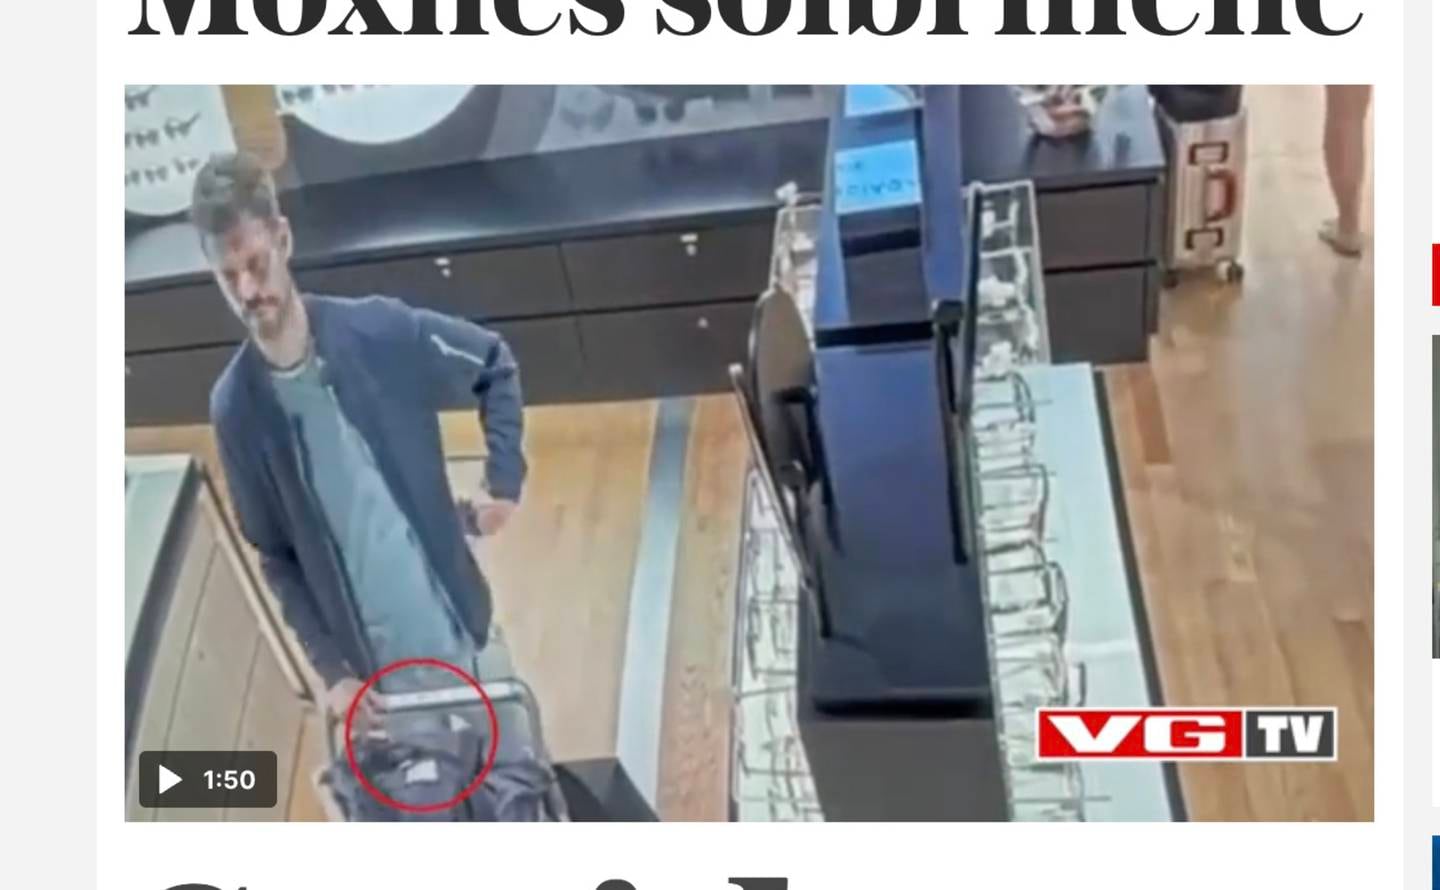 VGTV publiserte mandag en overvåkningsvideo der Rødt-leder Bjørnar Moxnes angivelig stjeler solbriller på Gardermoen. Moxnes ble sykemeldt mandag.